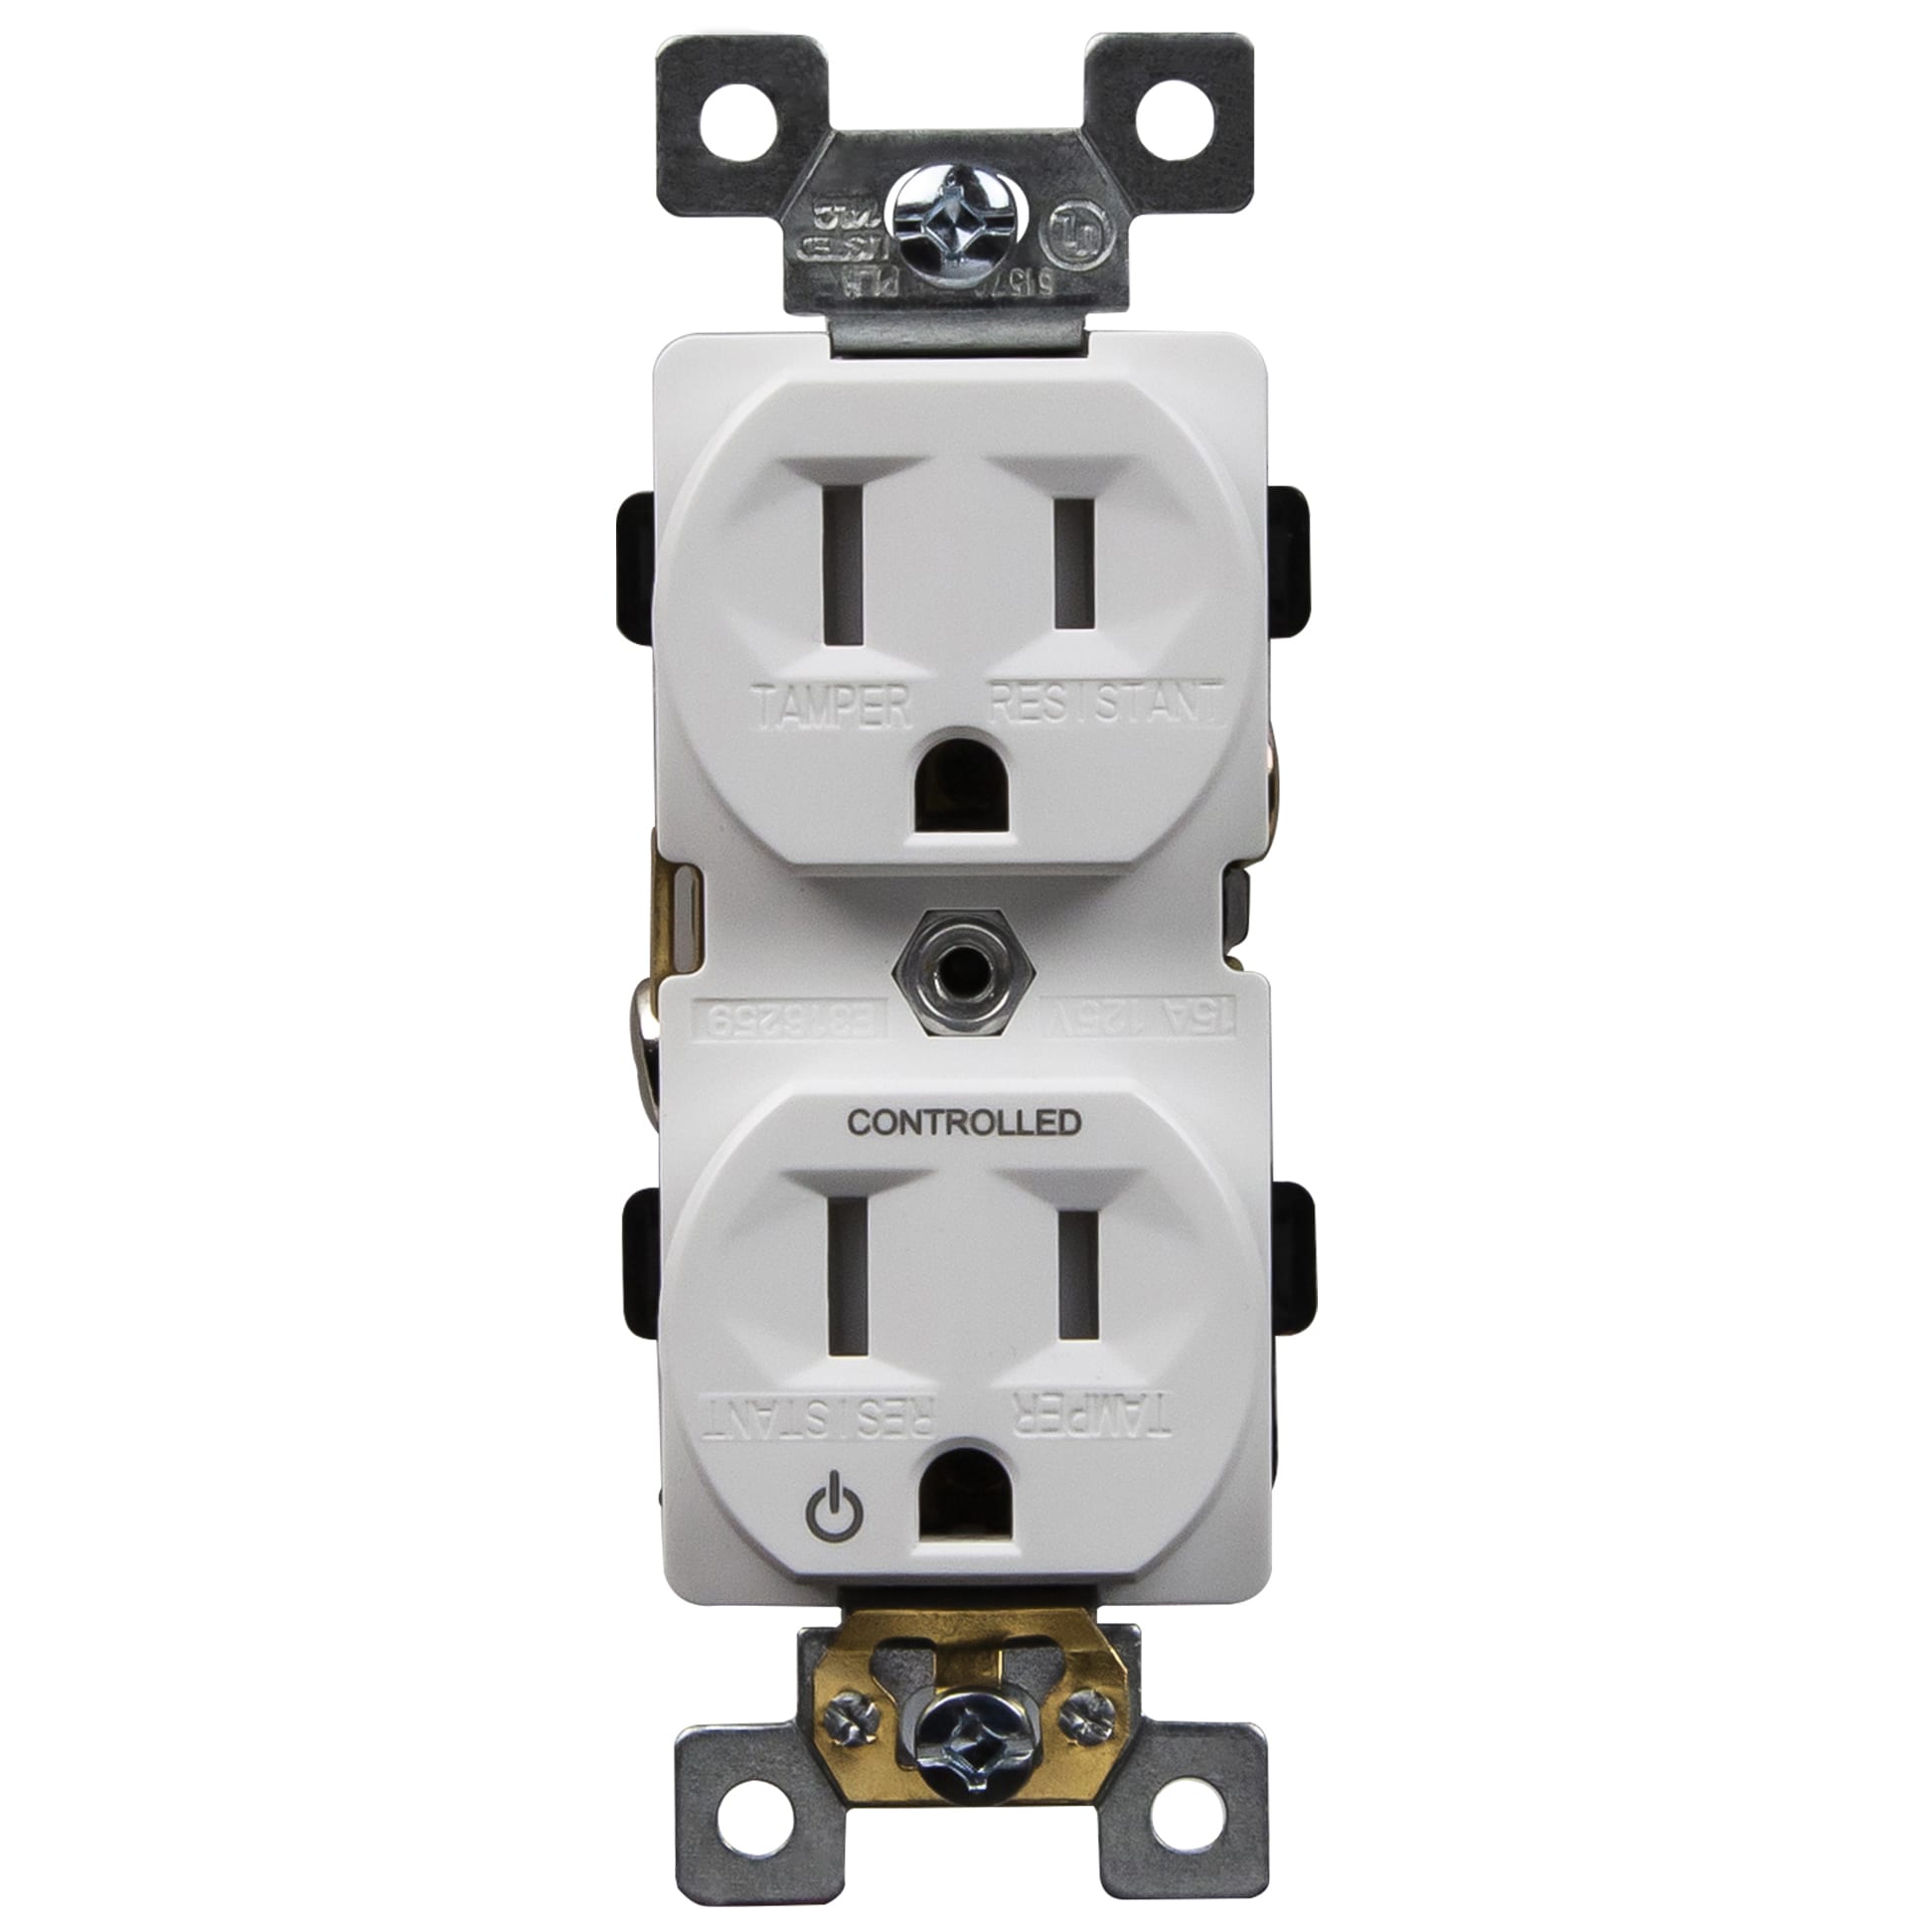 15A/125V Tamper-Resistant Plug-Load Controlled Duplex Outlet